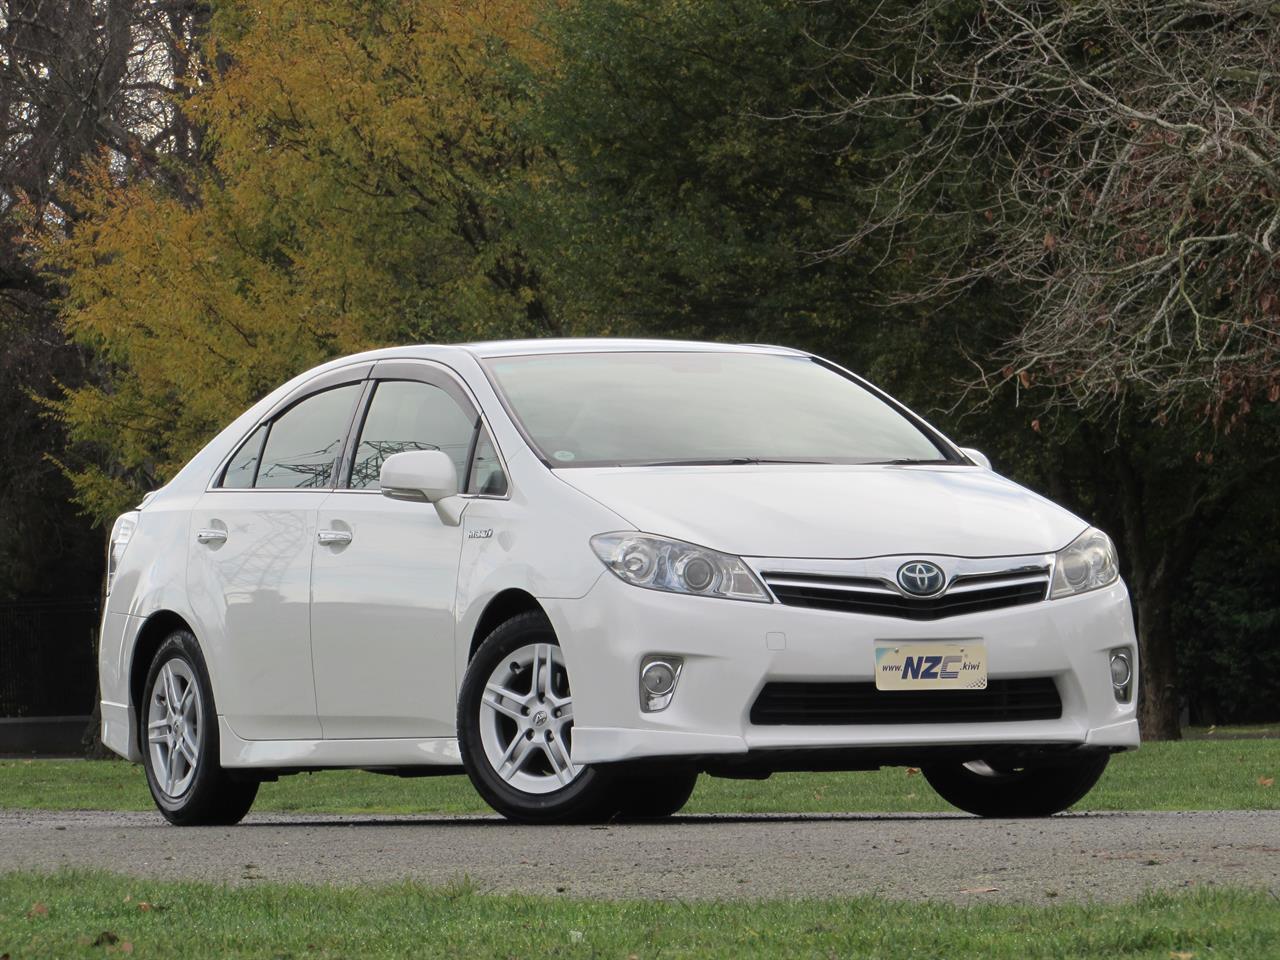 2011 Toyota SAI 2.4L Hybrid Cruise Control +Rebate of $851.79